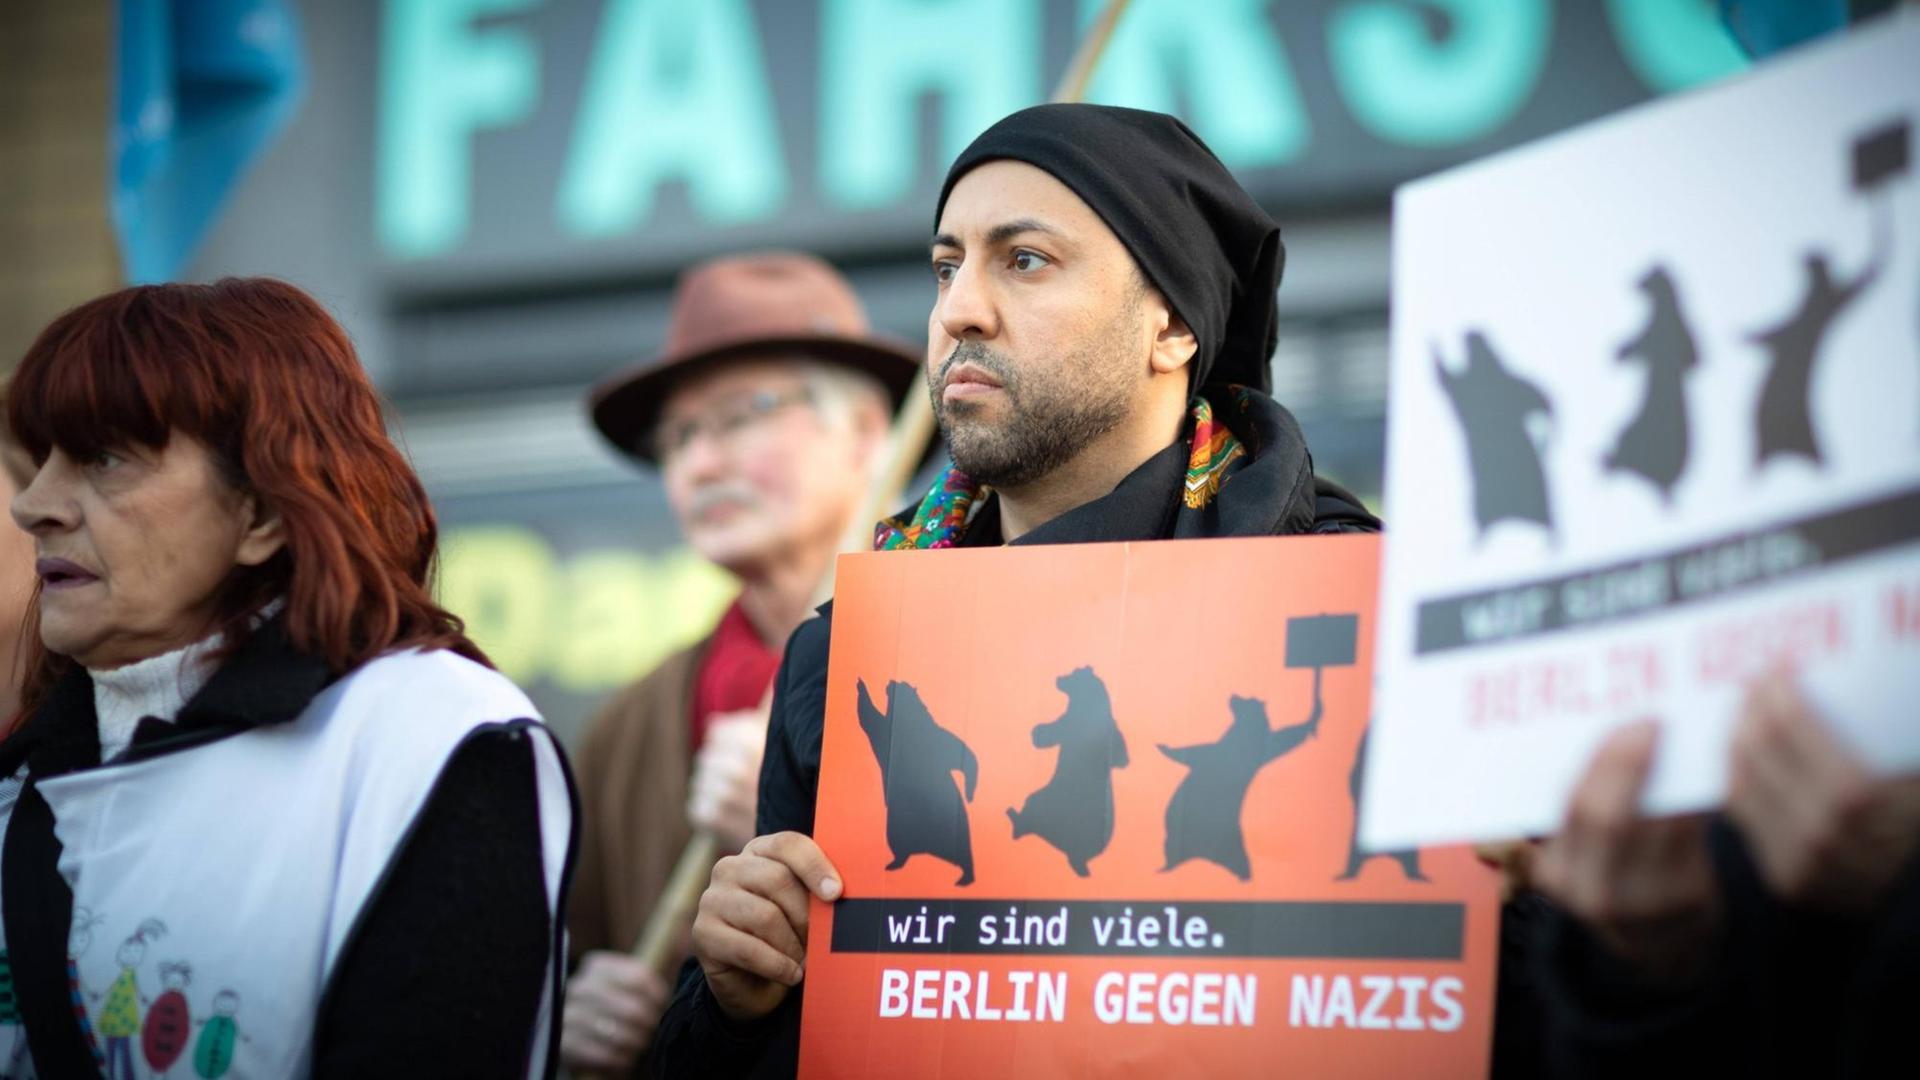 Ferat Kocak steht in einer Kundgebung in Berlin-Neukölln mit einem Schild auf dem steht: Wir sind mehr. Berlin gegen Nazis.